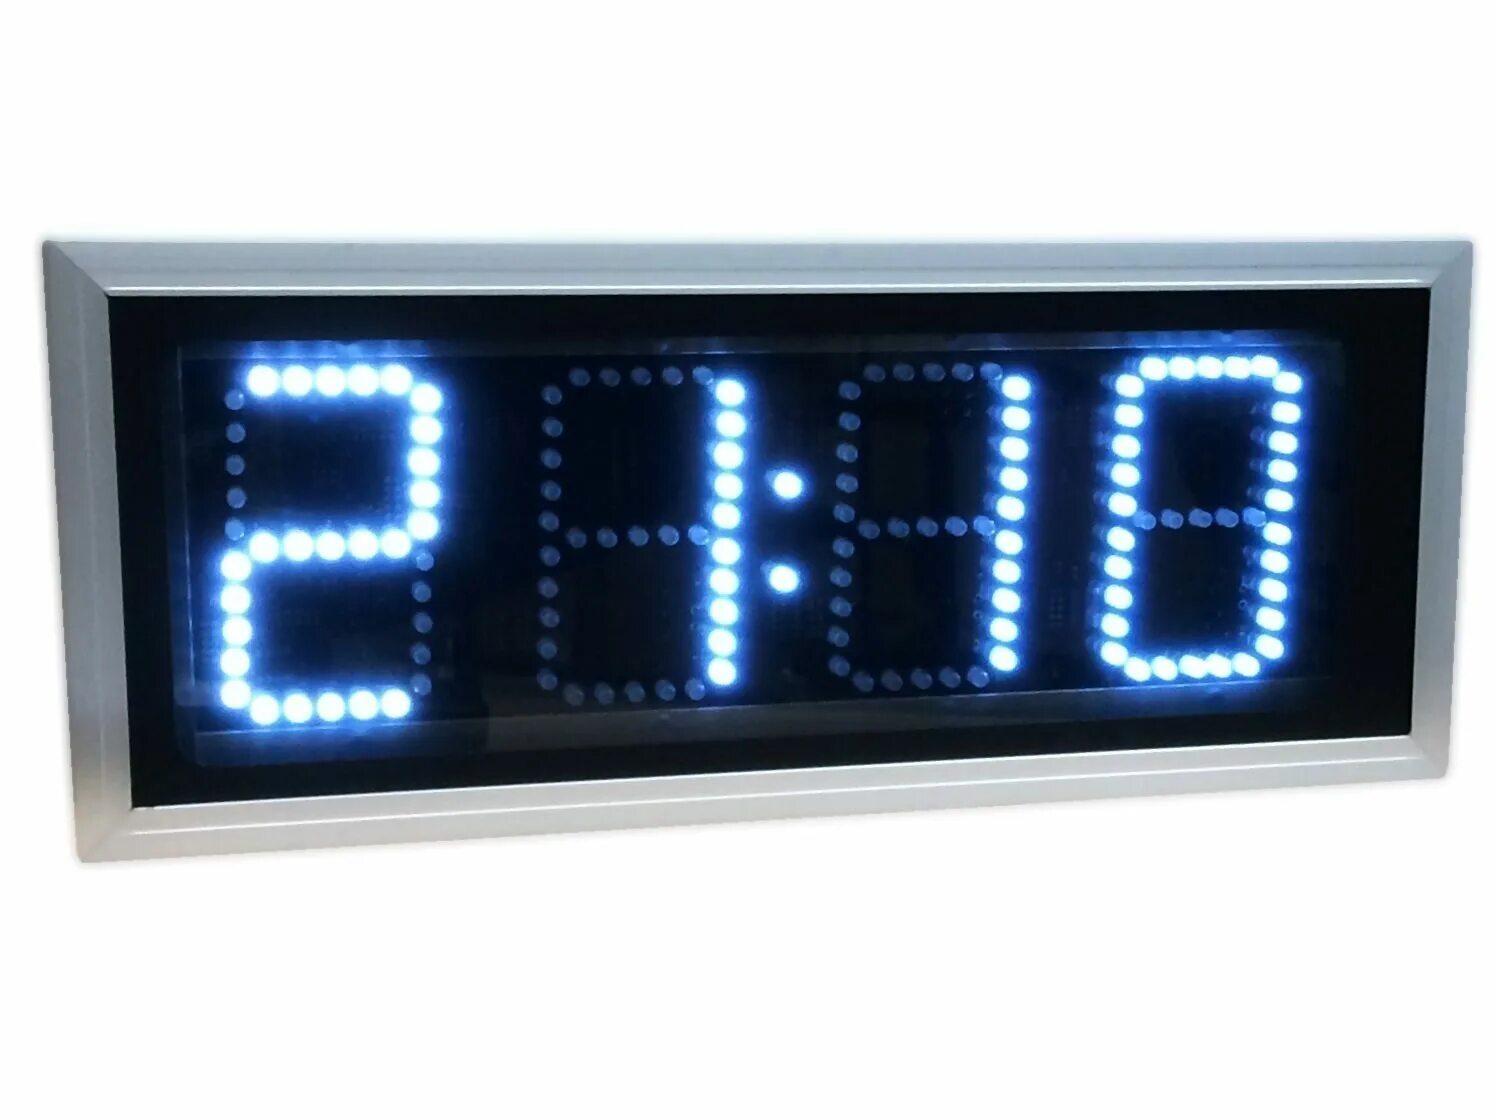 Часы-табло электронные настенные Импульс 415-t-er2 циферблат цифровой. Часы-табло кварц-3-т-у (двухсторонние, вторичные). Часы-табло кварц 8-т-у. Цифровые настенные часы. Часы электронные настенные подсветкой